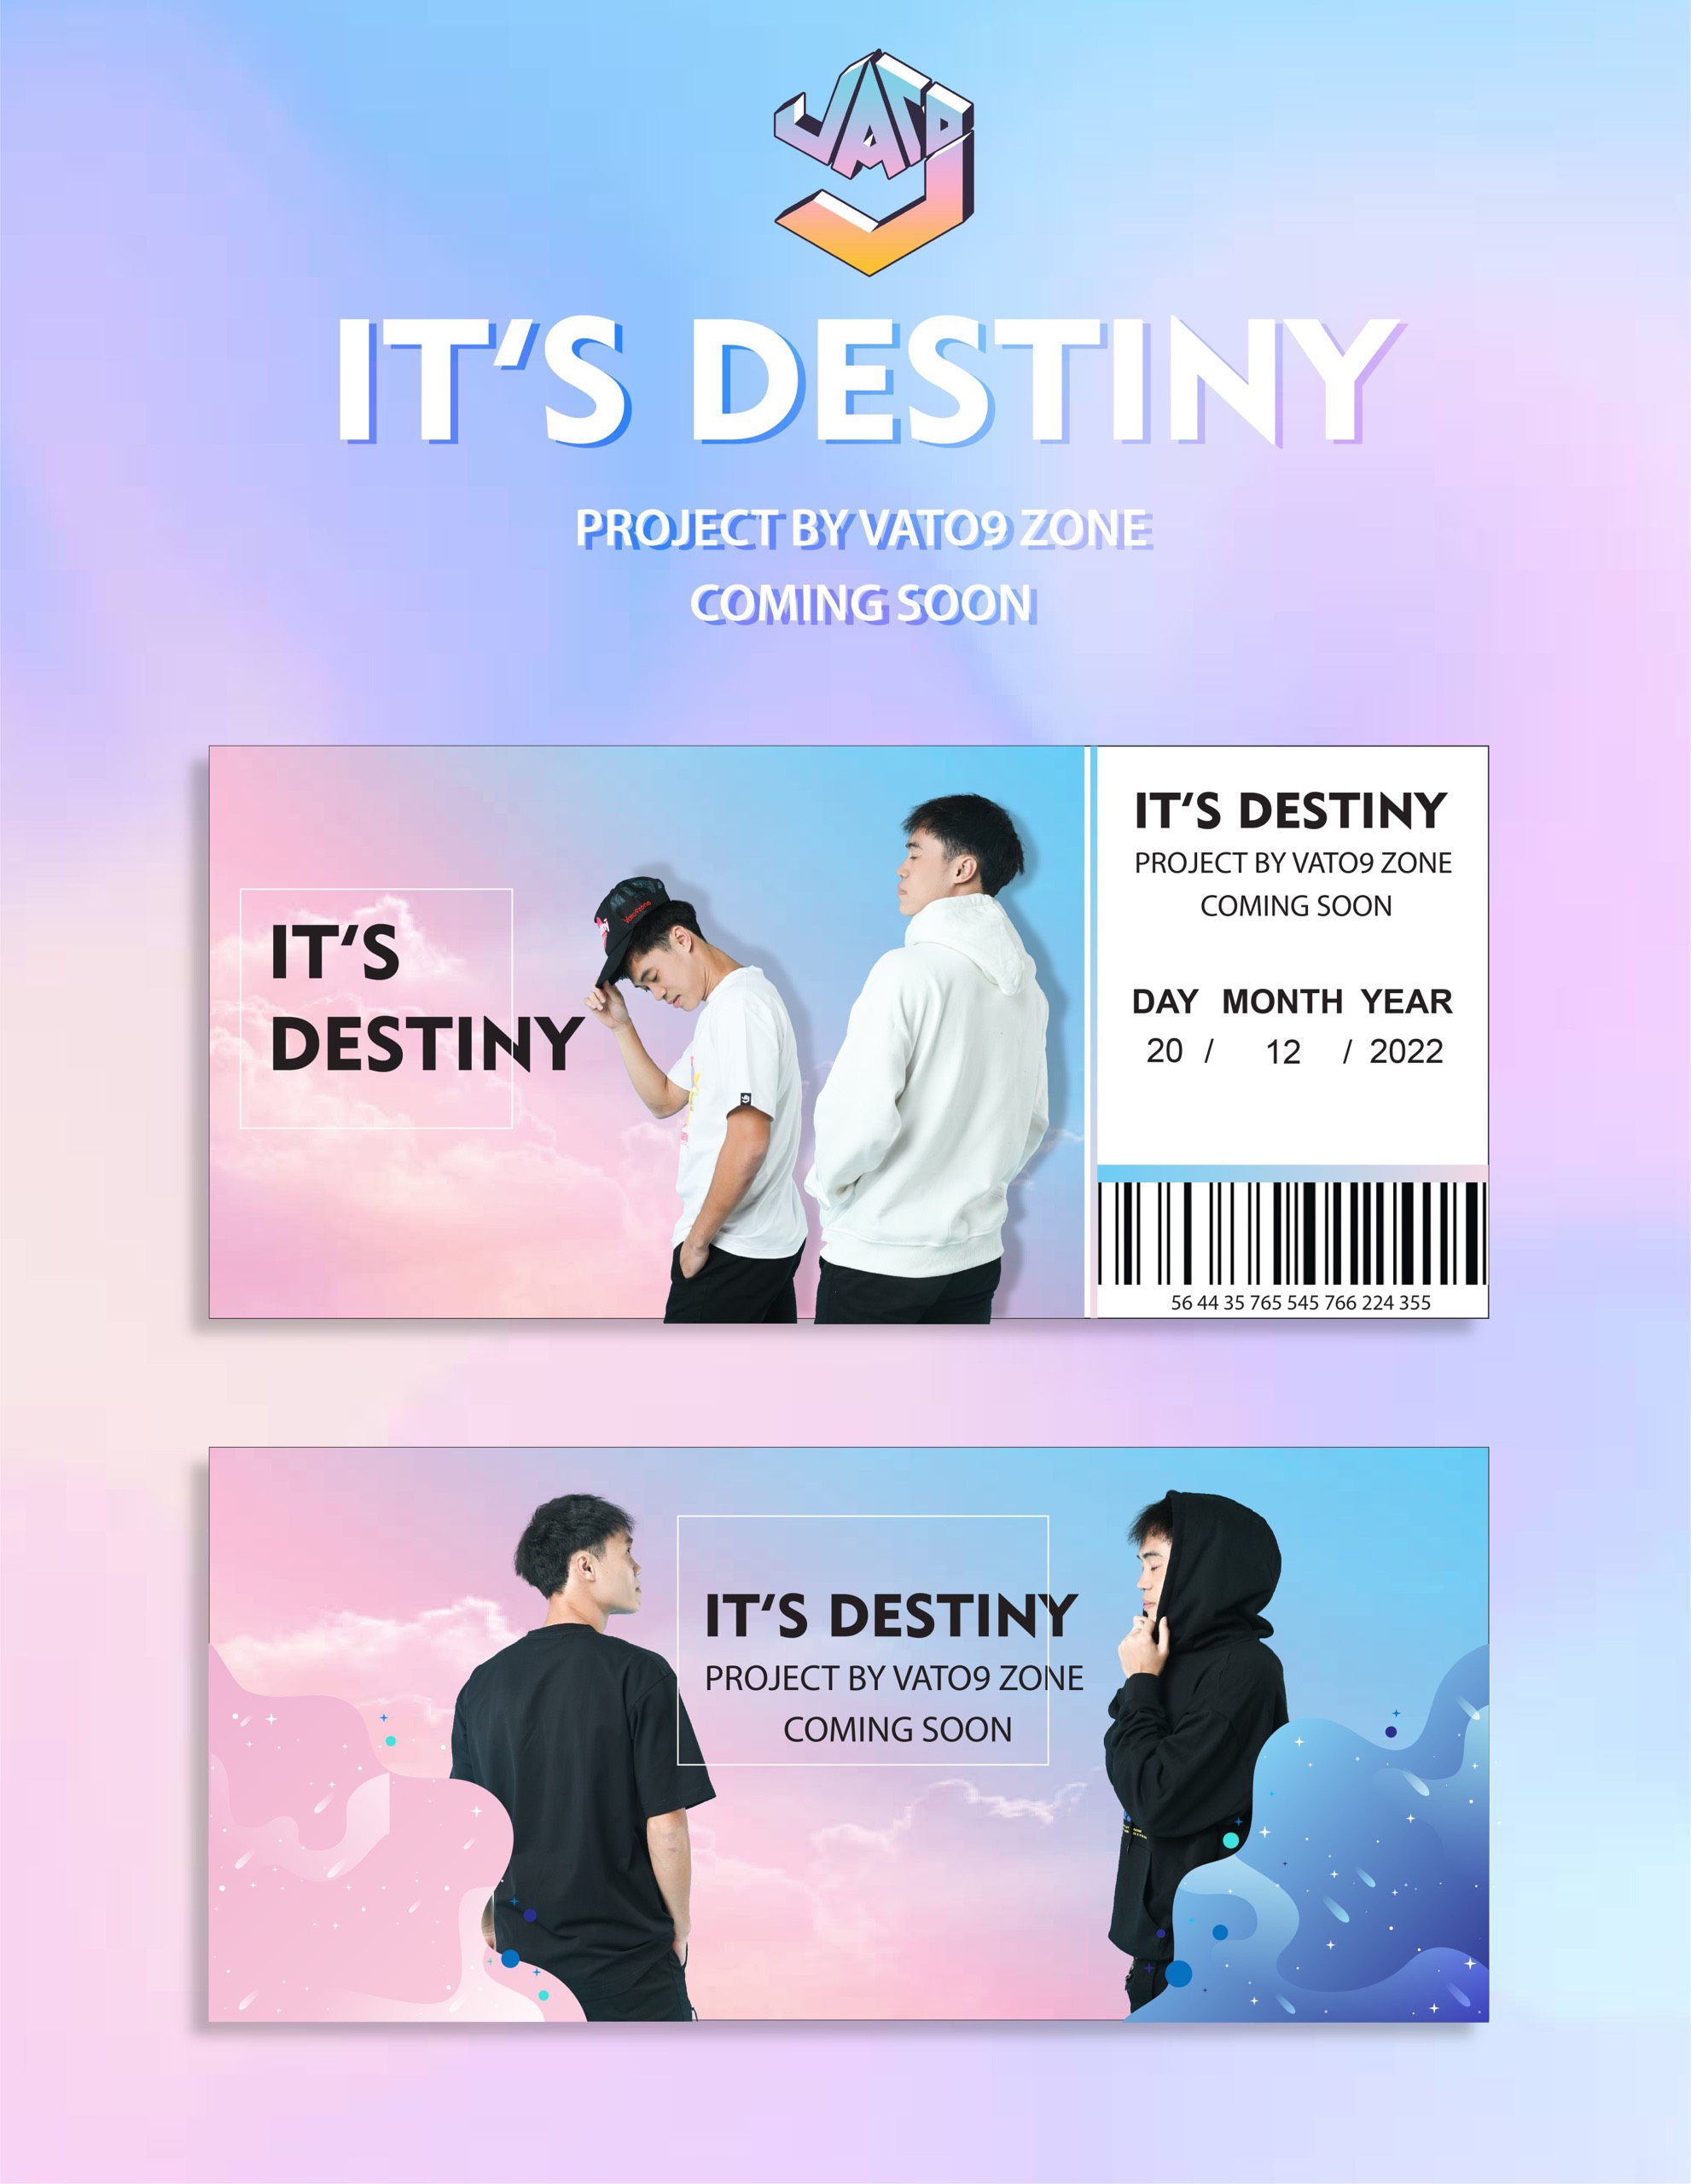 Thương hiệu thời trang của cầu thủ Văn Toàn ra mắt sản phẩm đặc biệt ‘It’s Destiny’ - Ảnh 1.